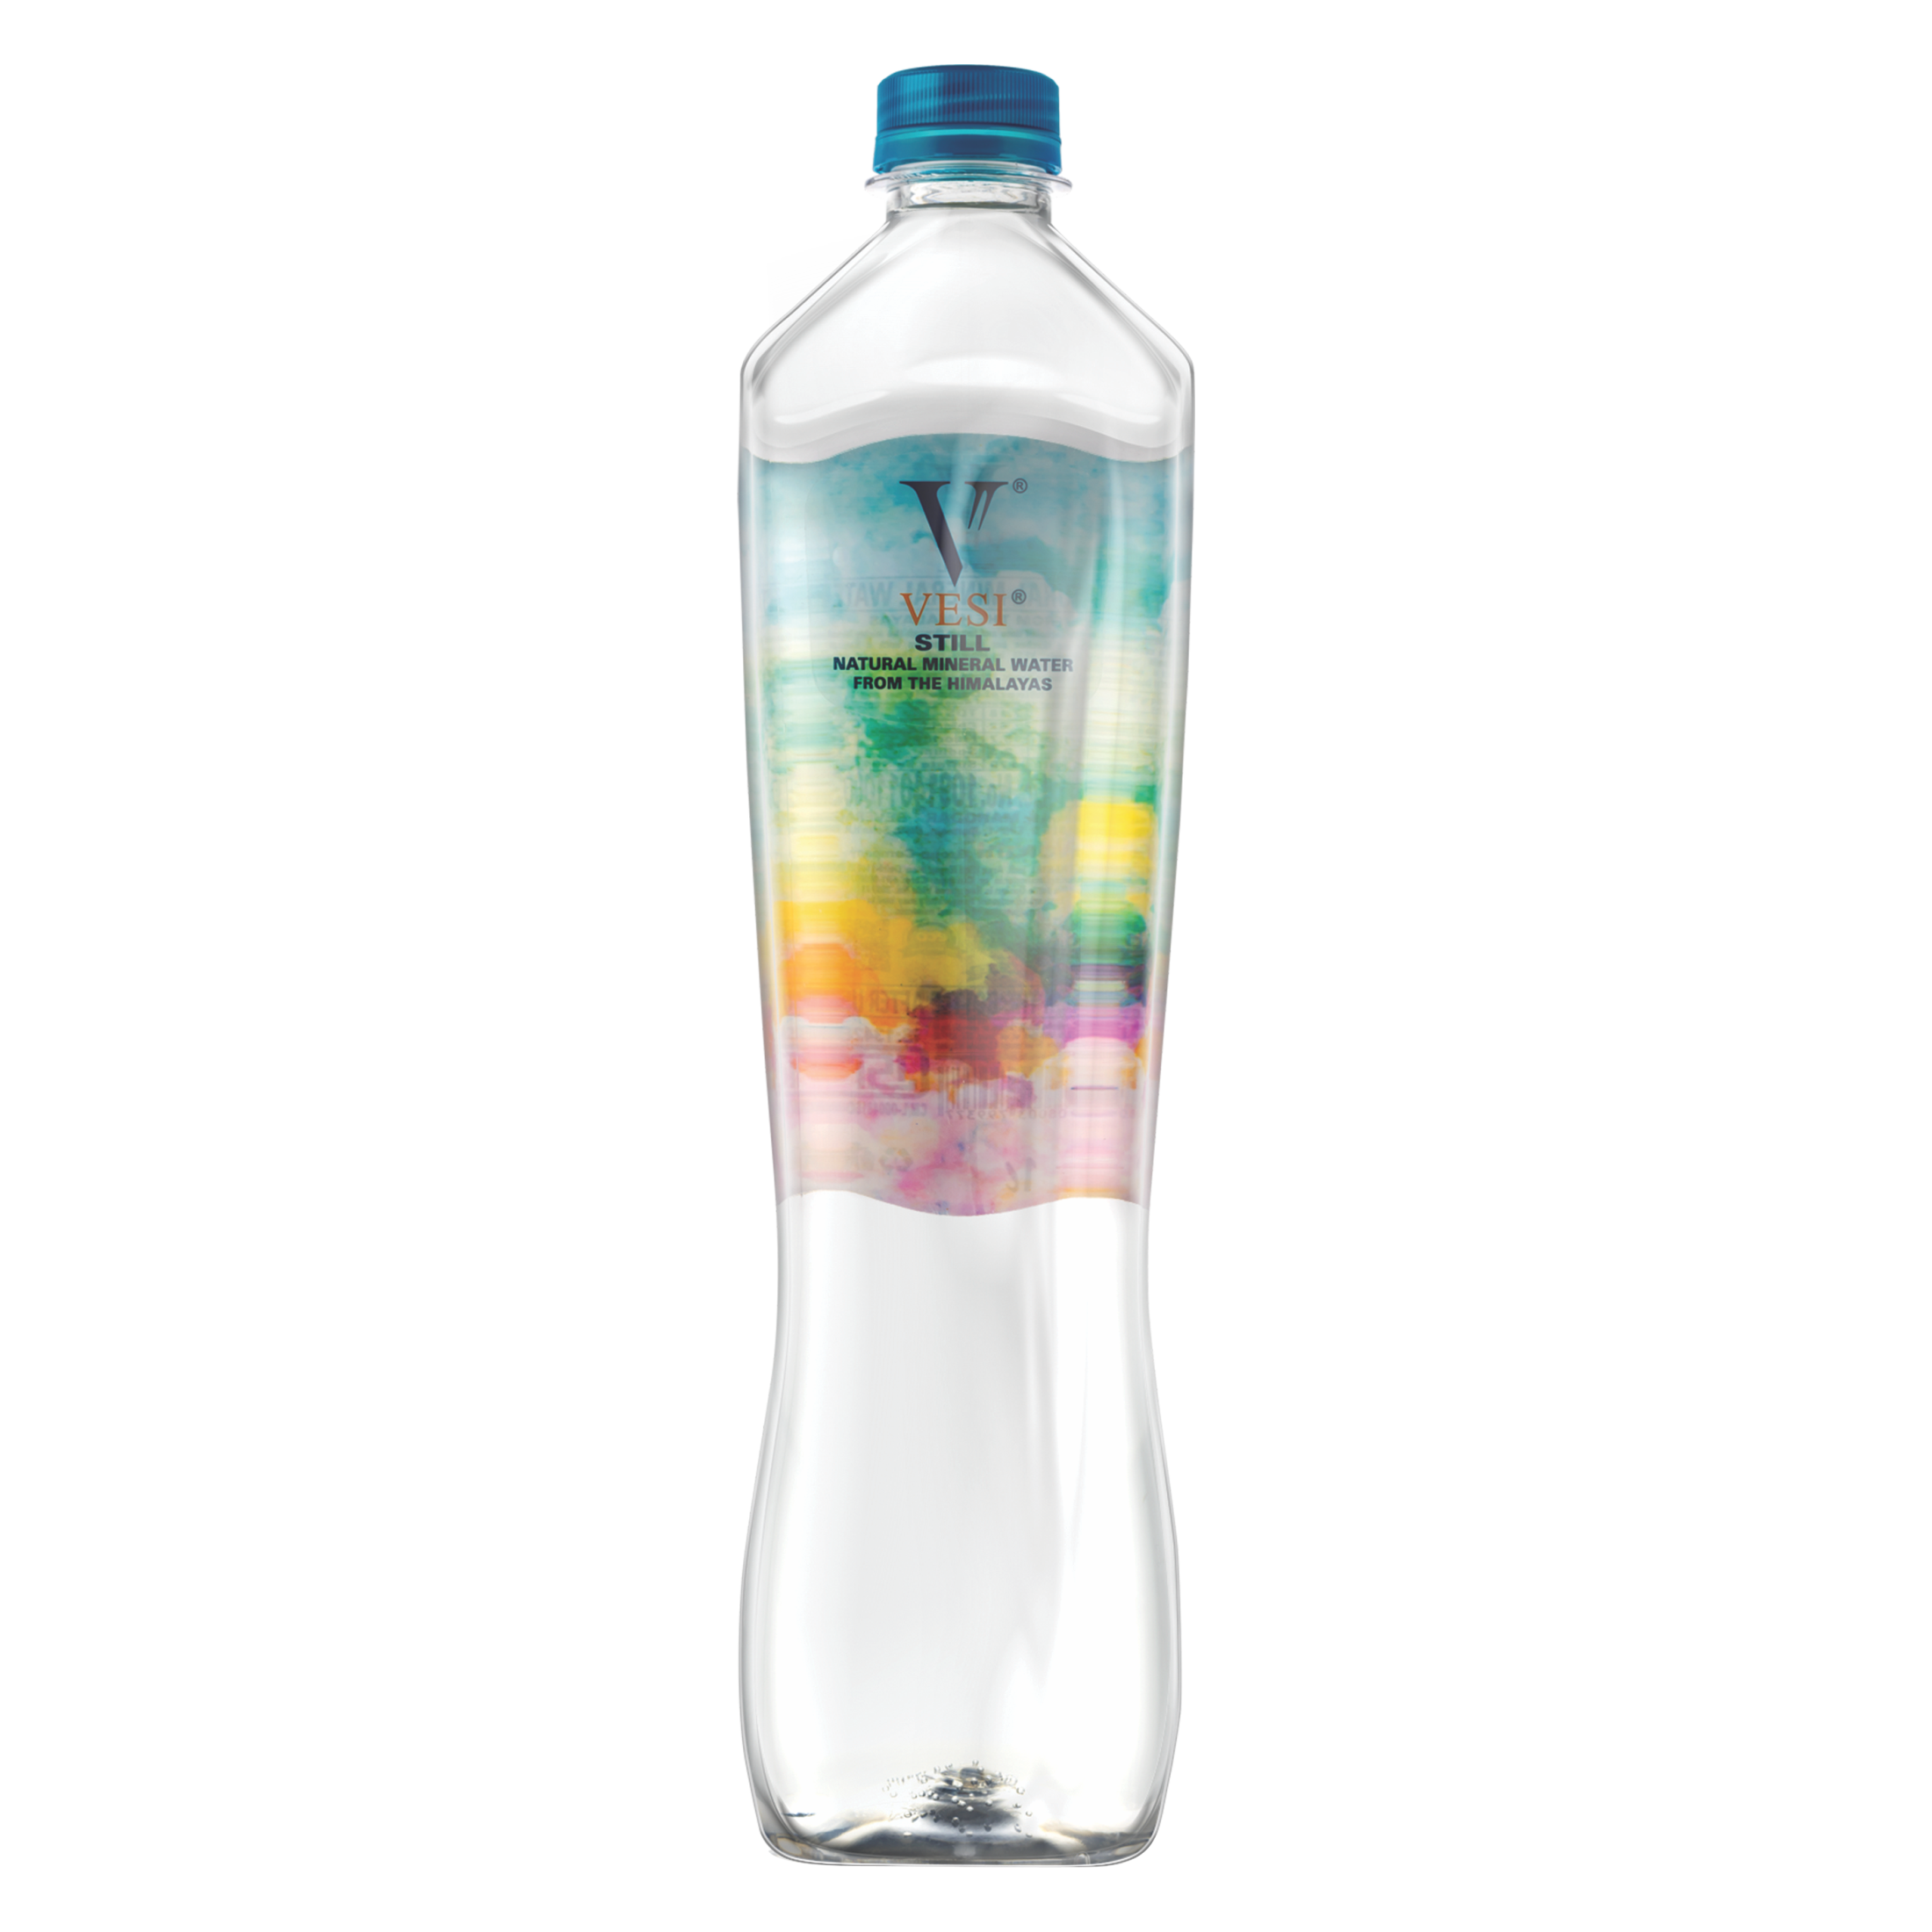 Vesi water bottle